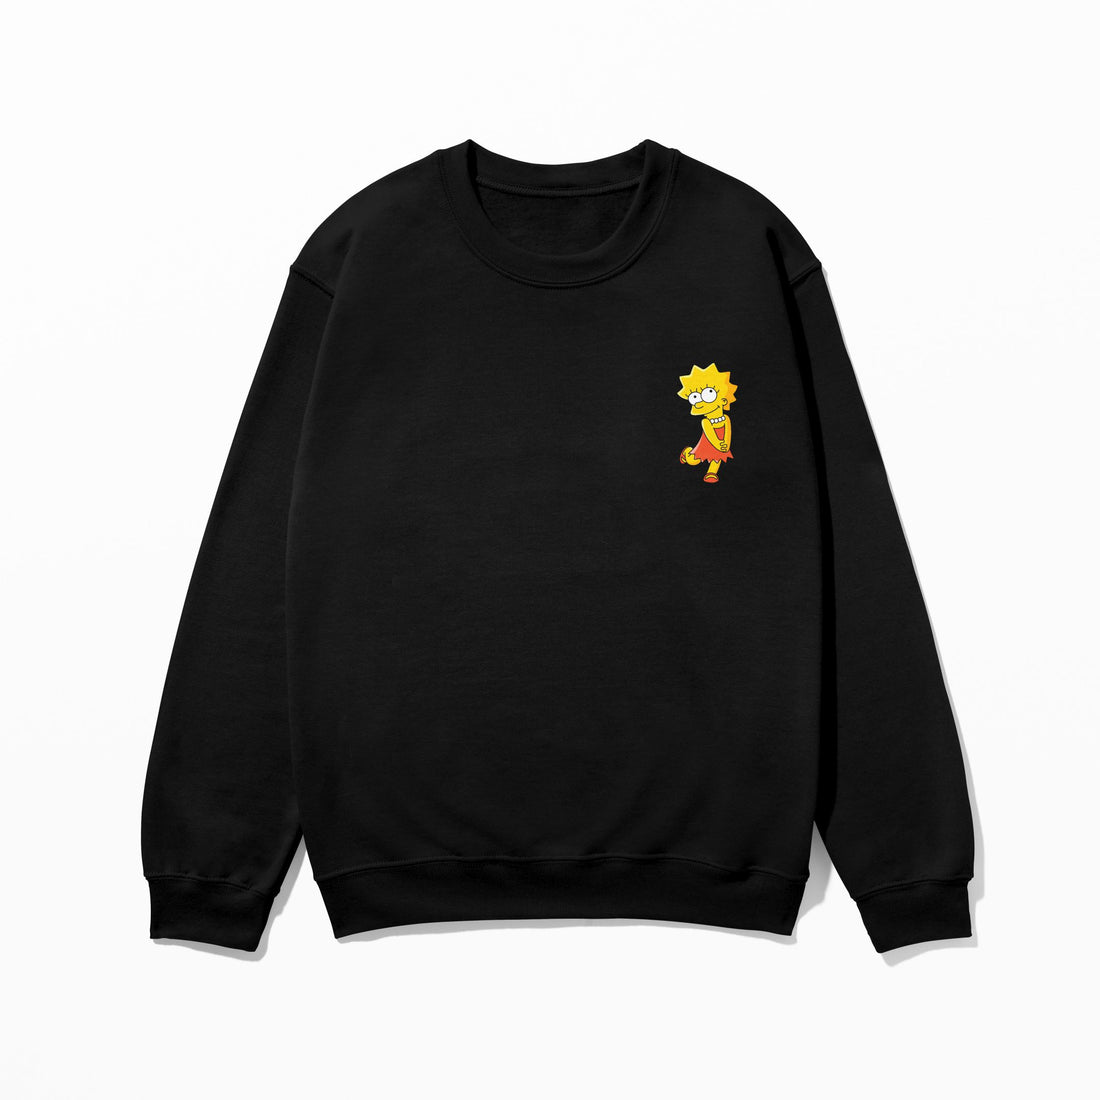 Lisa Simpson - Sweatshirt